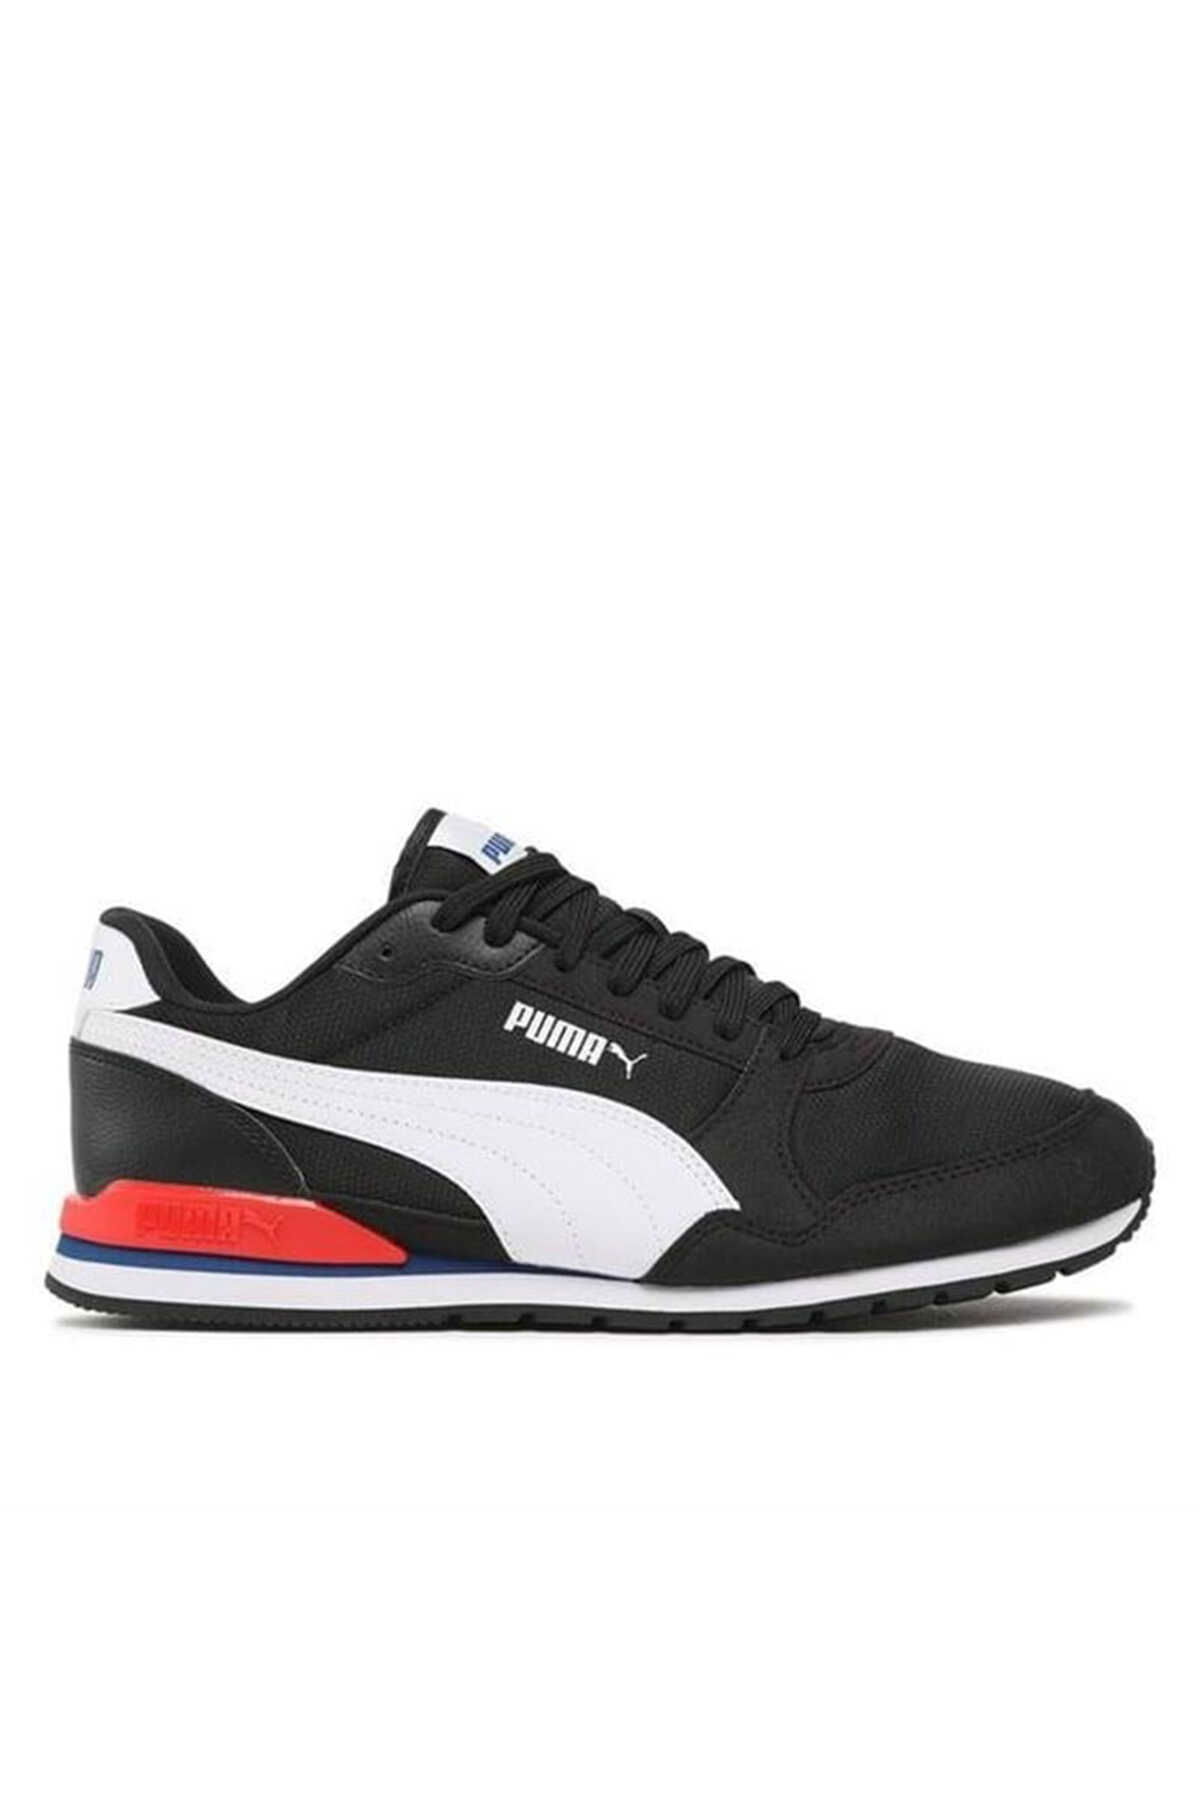 Puma - Puma ST Runner v3 Mesh Unisex Sneaker Ayakkabı Siyah / Kırmızı